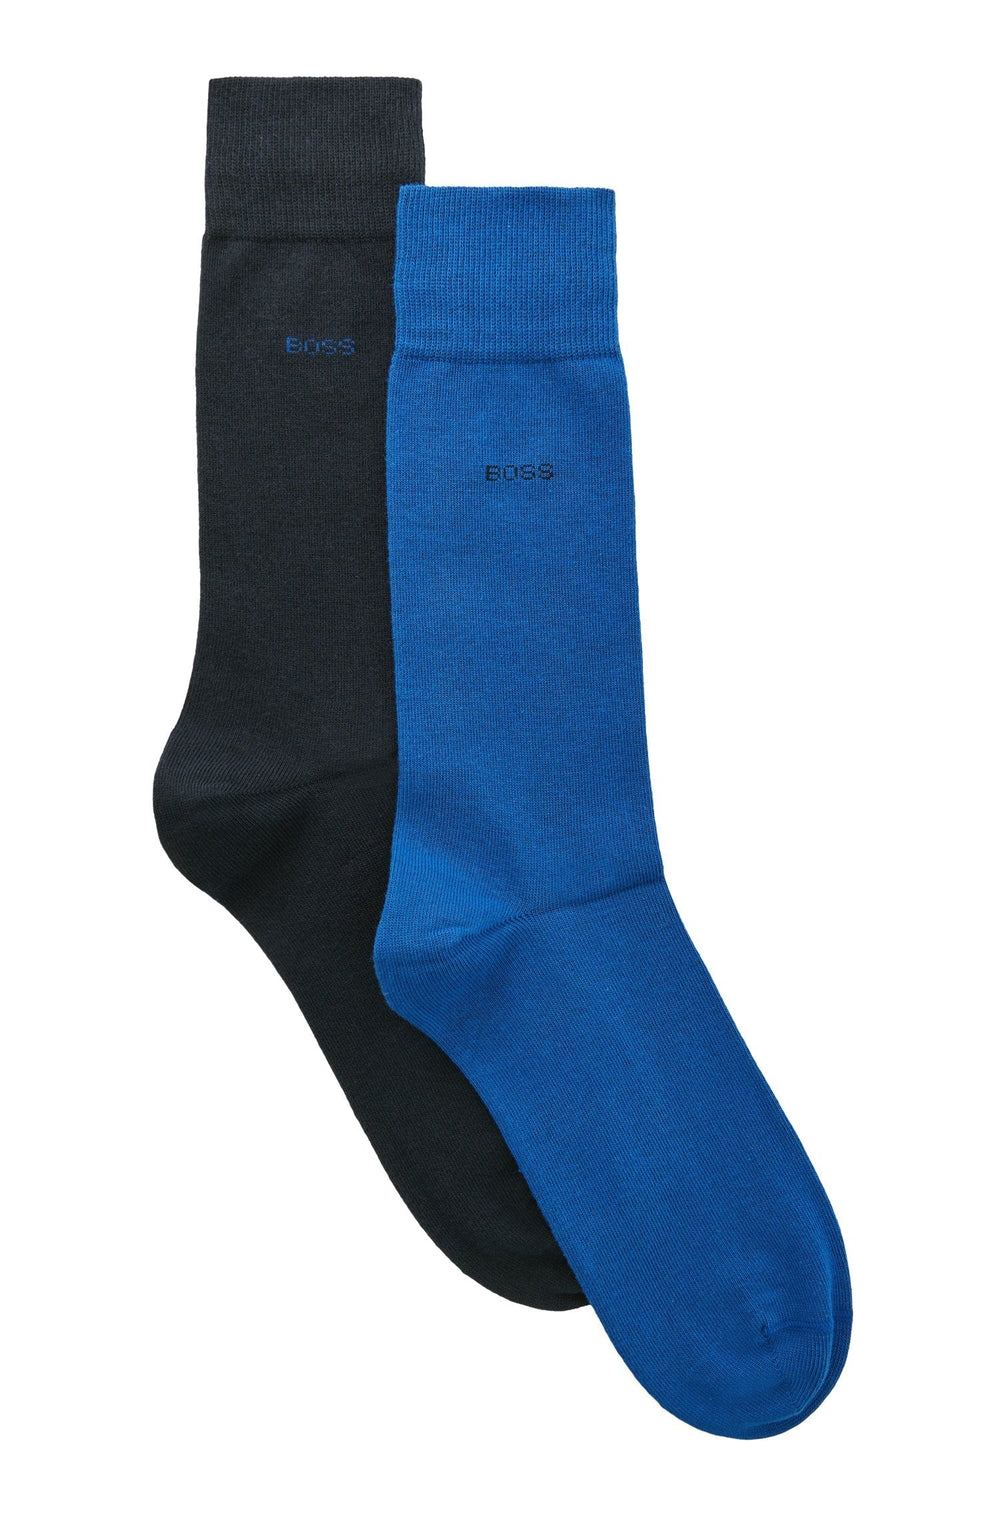 Boss 2 Pack Men's Regular Length Cotton Blend Sock